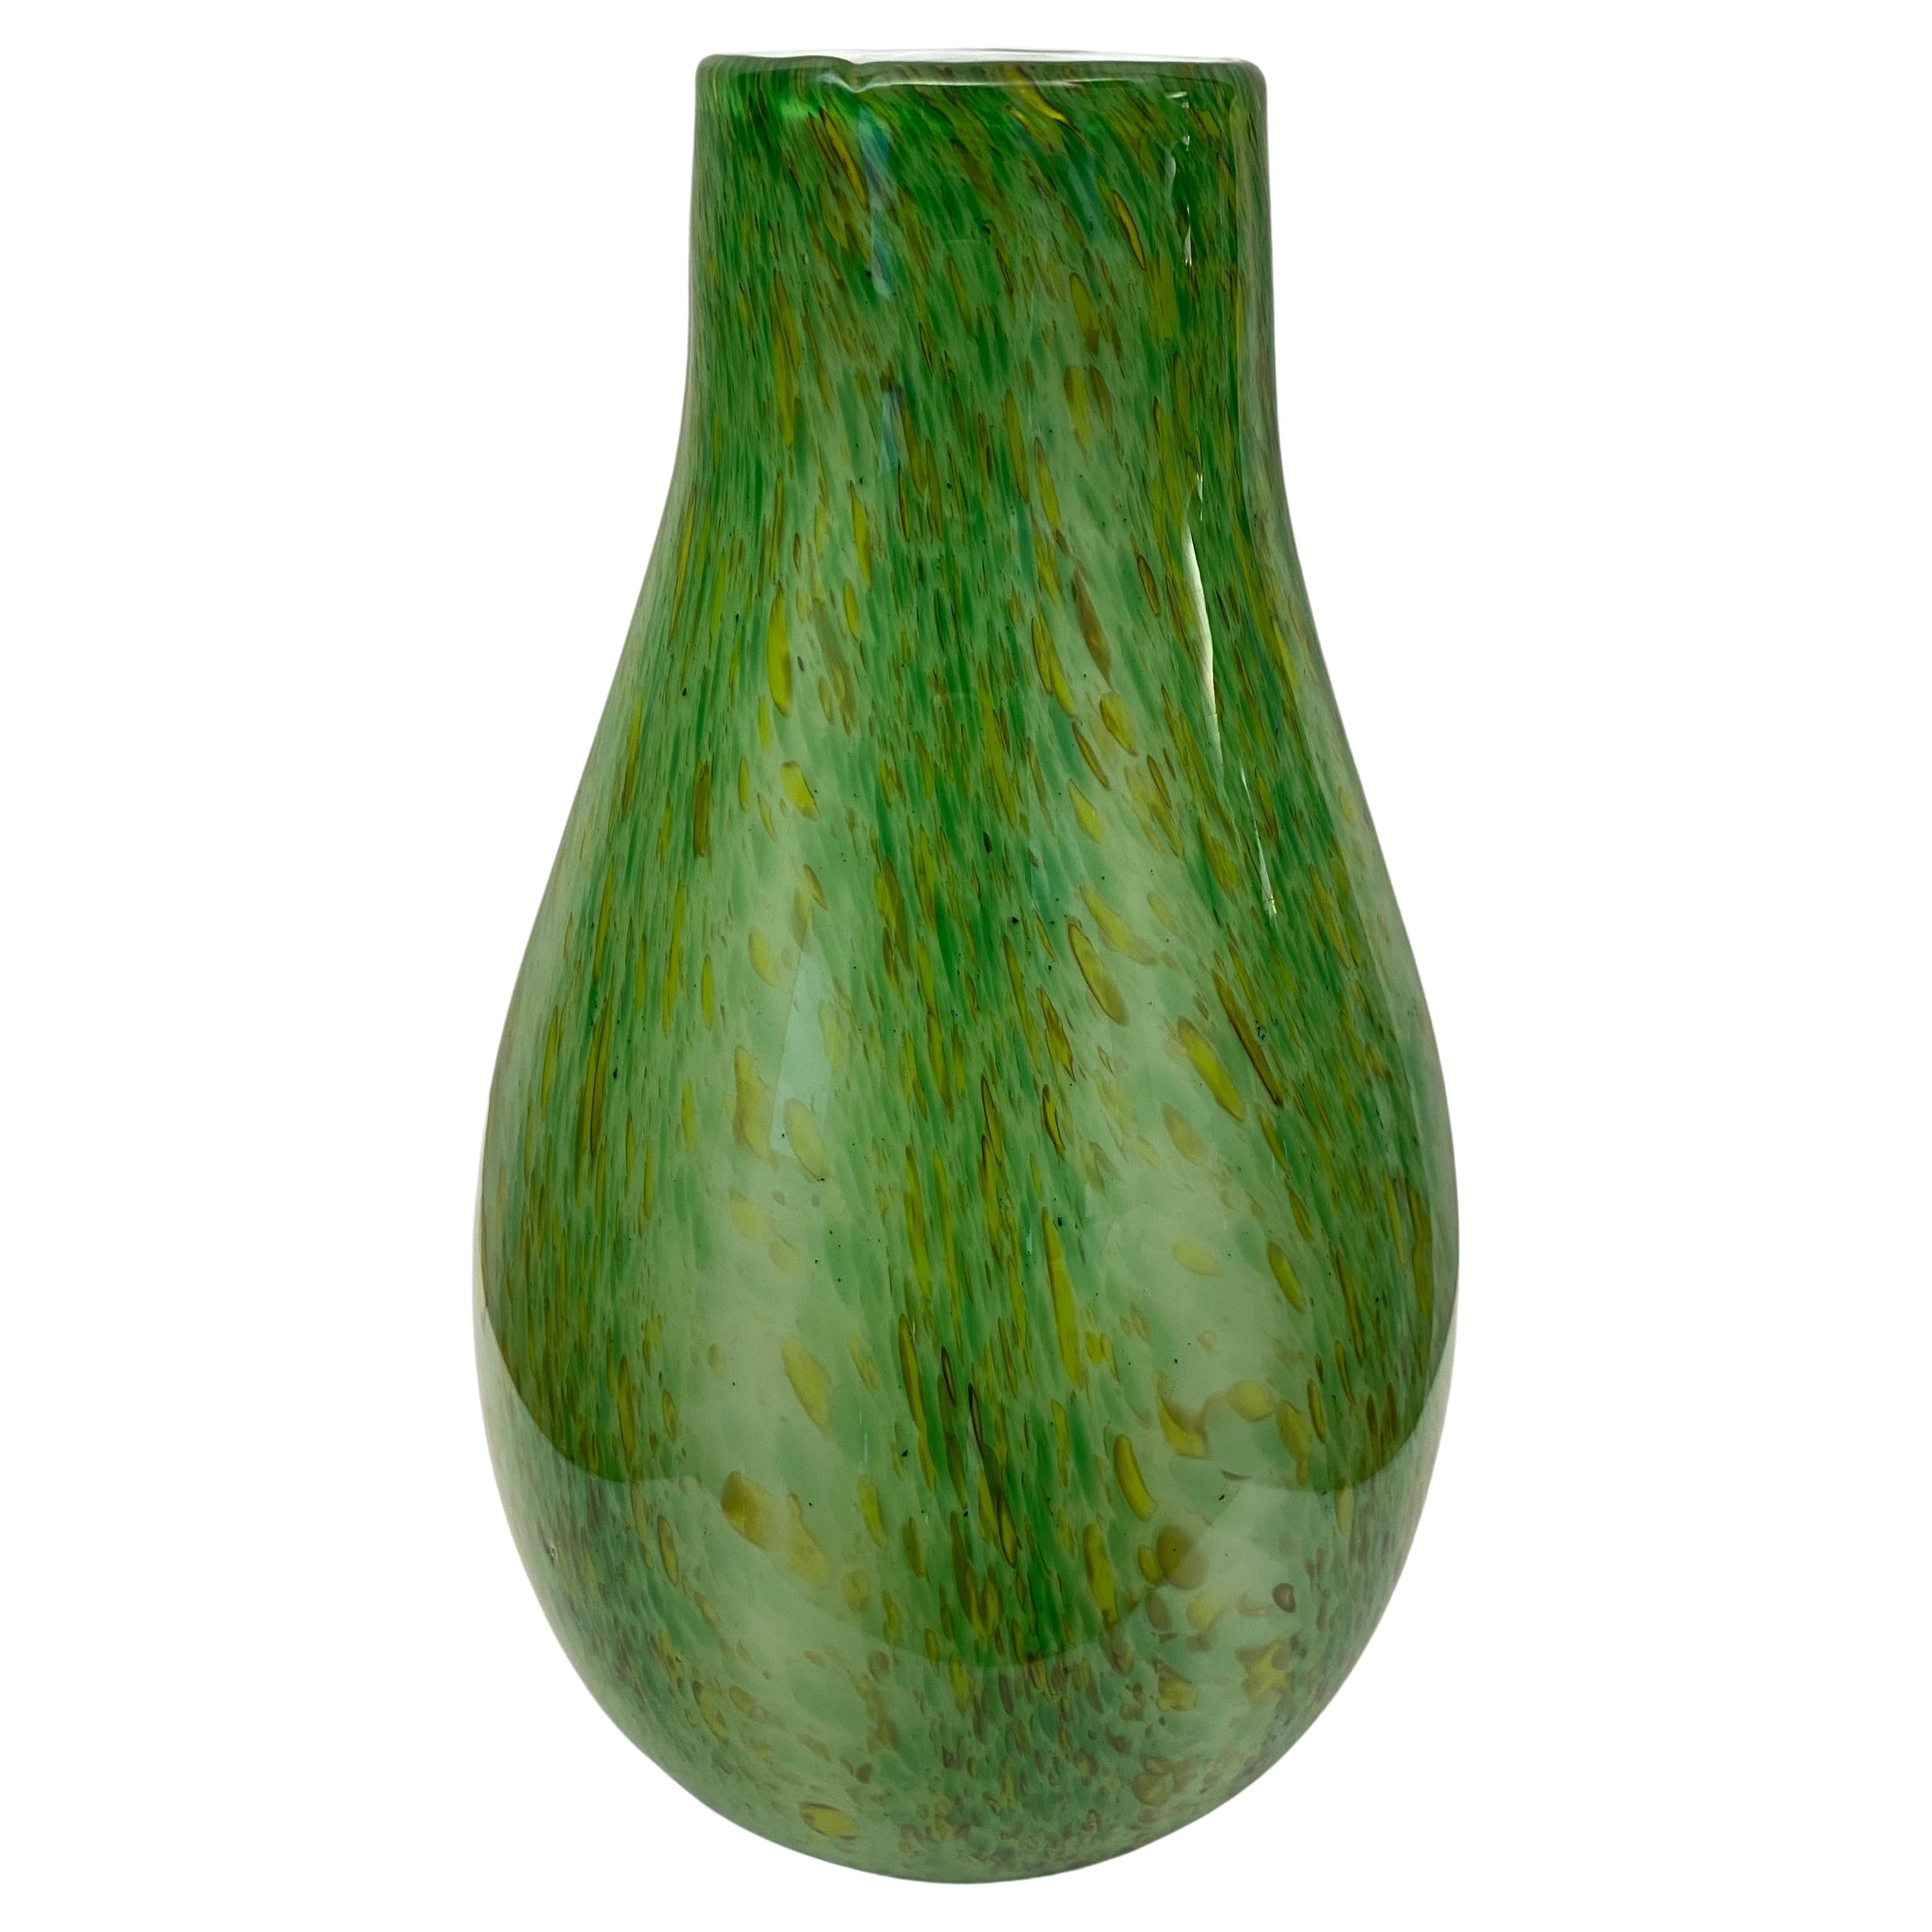 Grüne Formia-Vase aus Murano-Kunstglas in der Art von Hilton McConnico